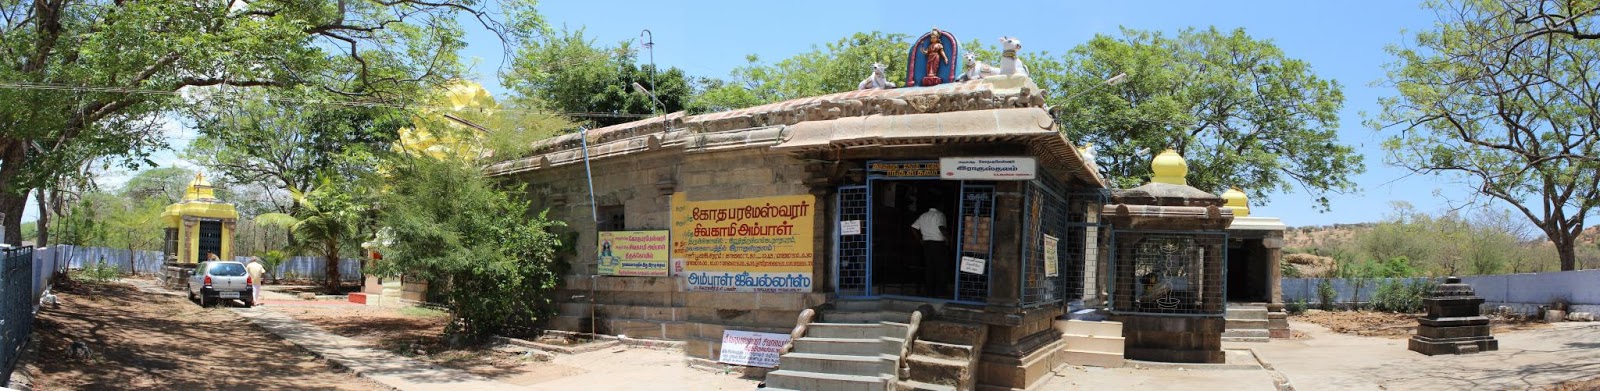 Kunnathur Sri Gothai parameswarar (Raghu) Temple (Nava Kailasam)- Thirunelveli